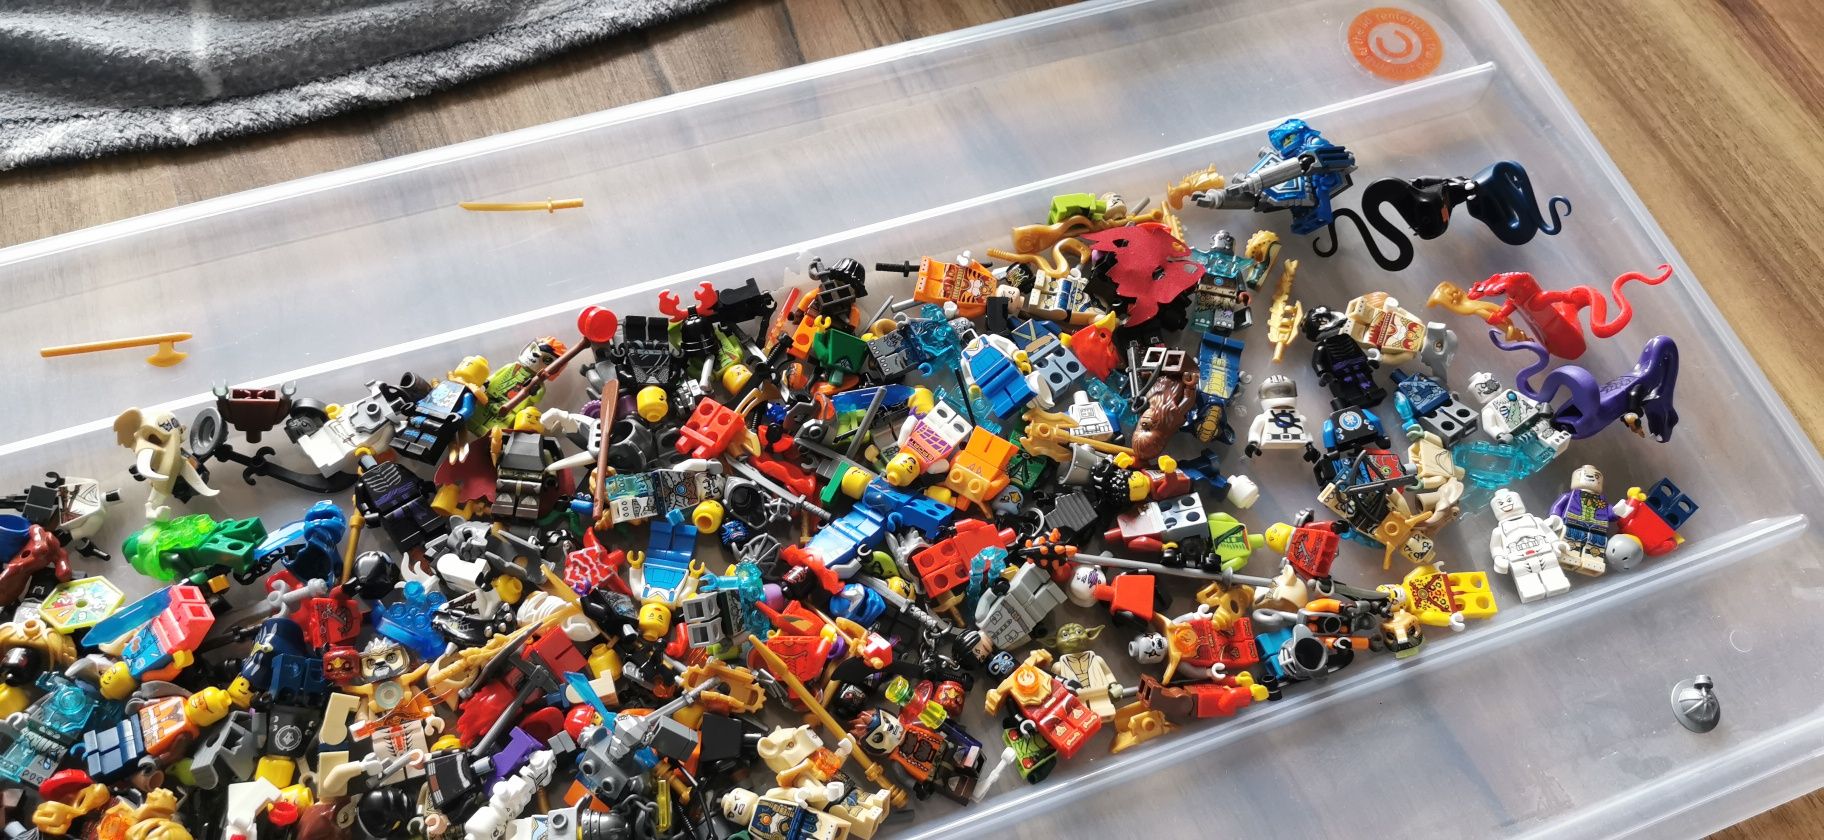 LEGO Wieel zestawów